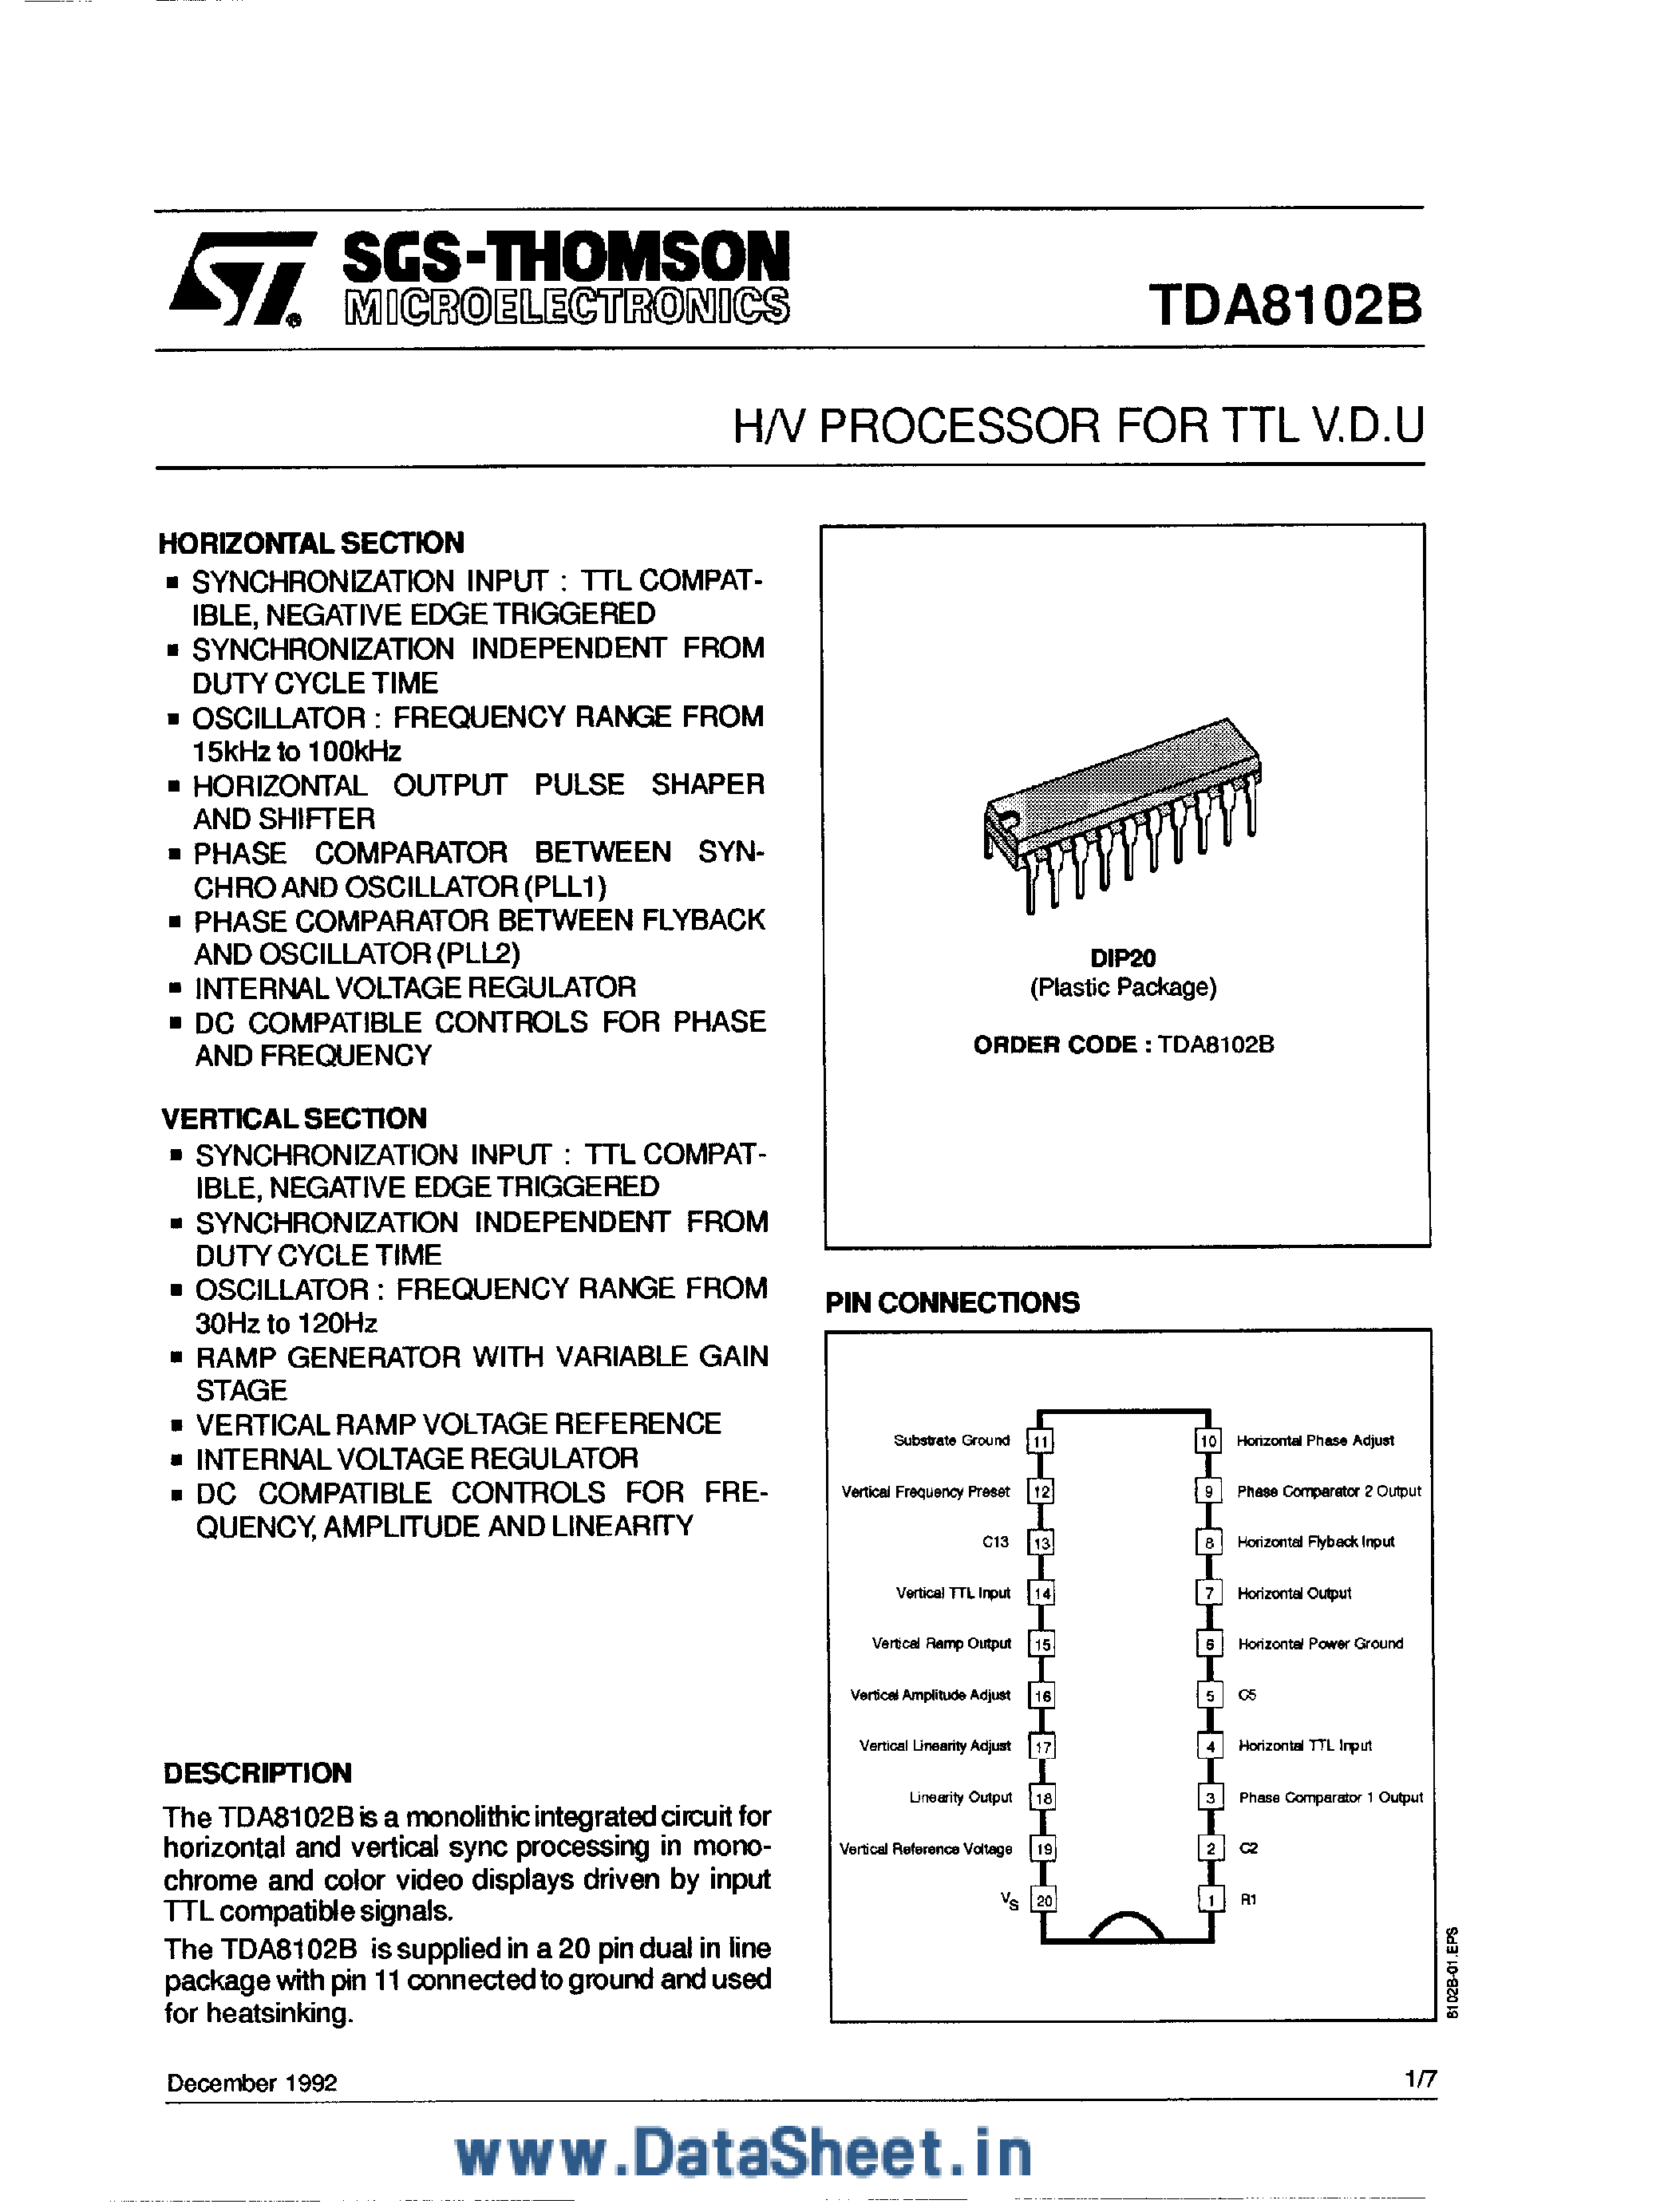 Datasheet TDA8102B - H/V Processor for TTL VDU page 1